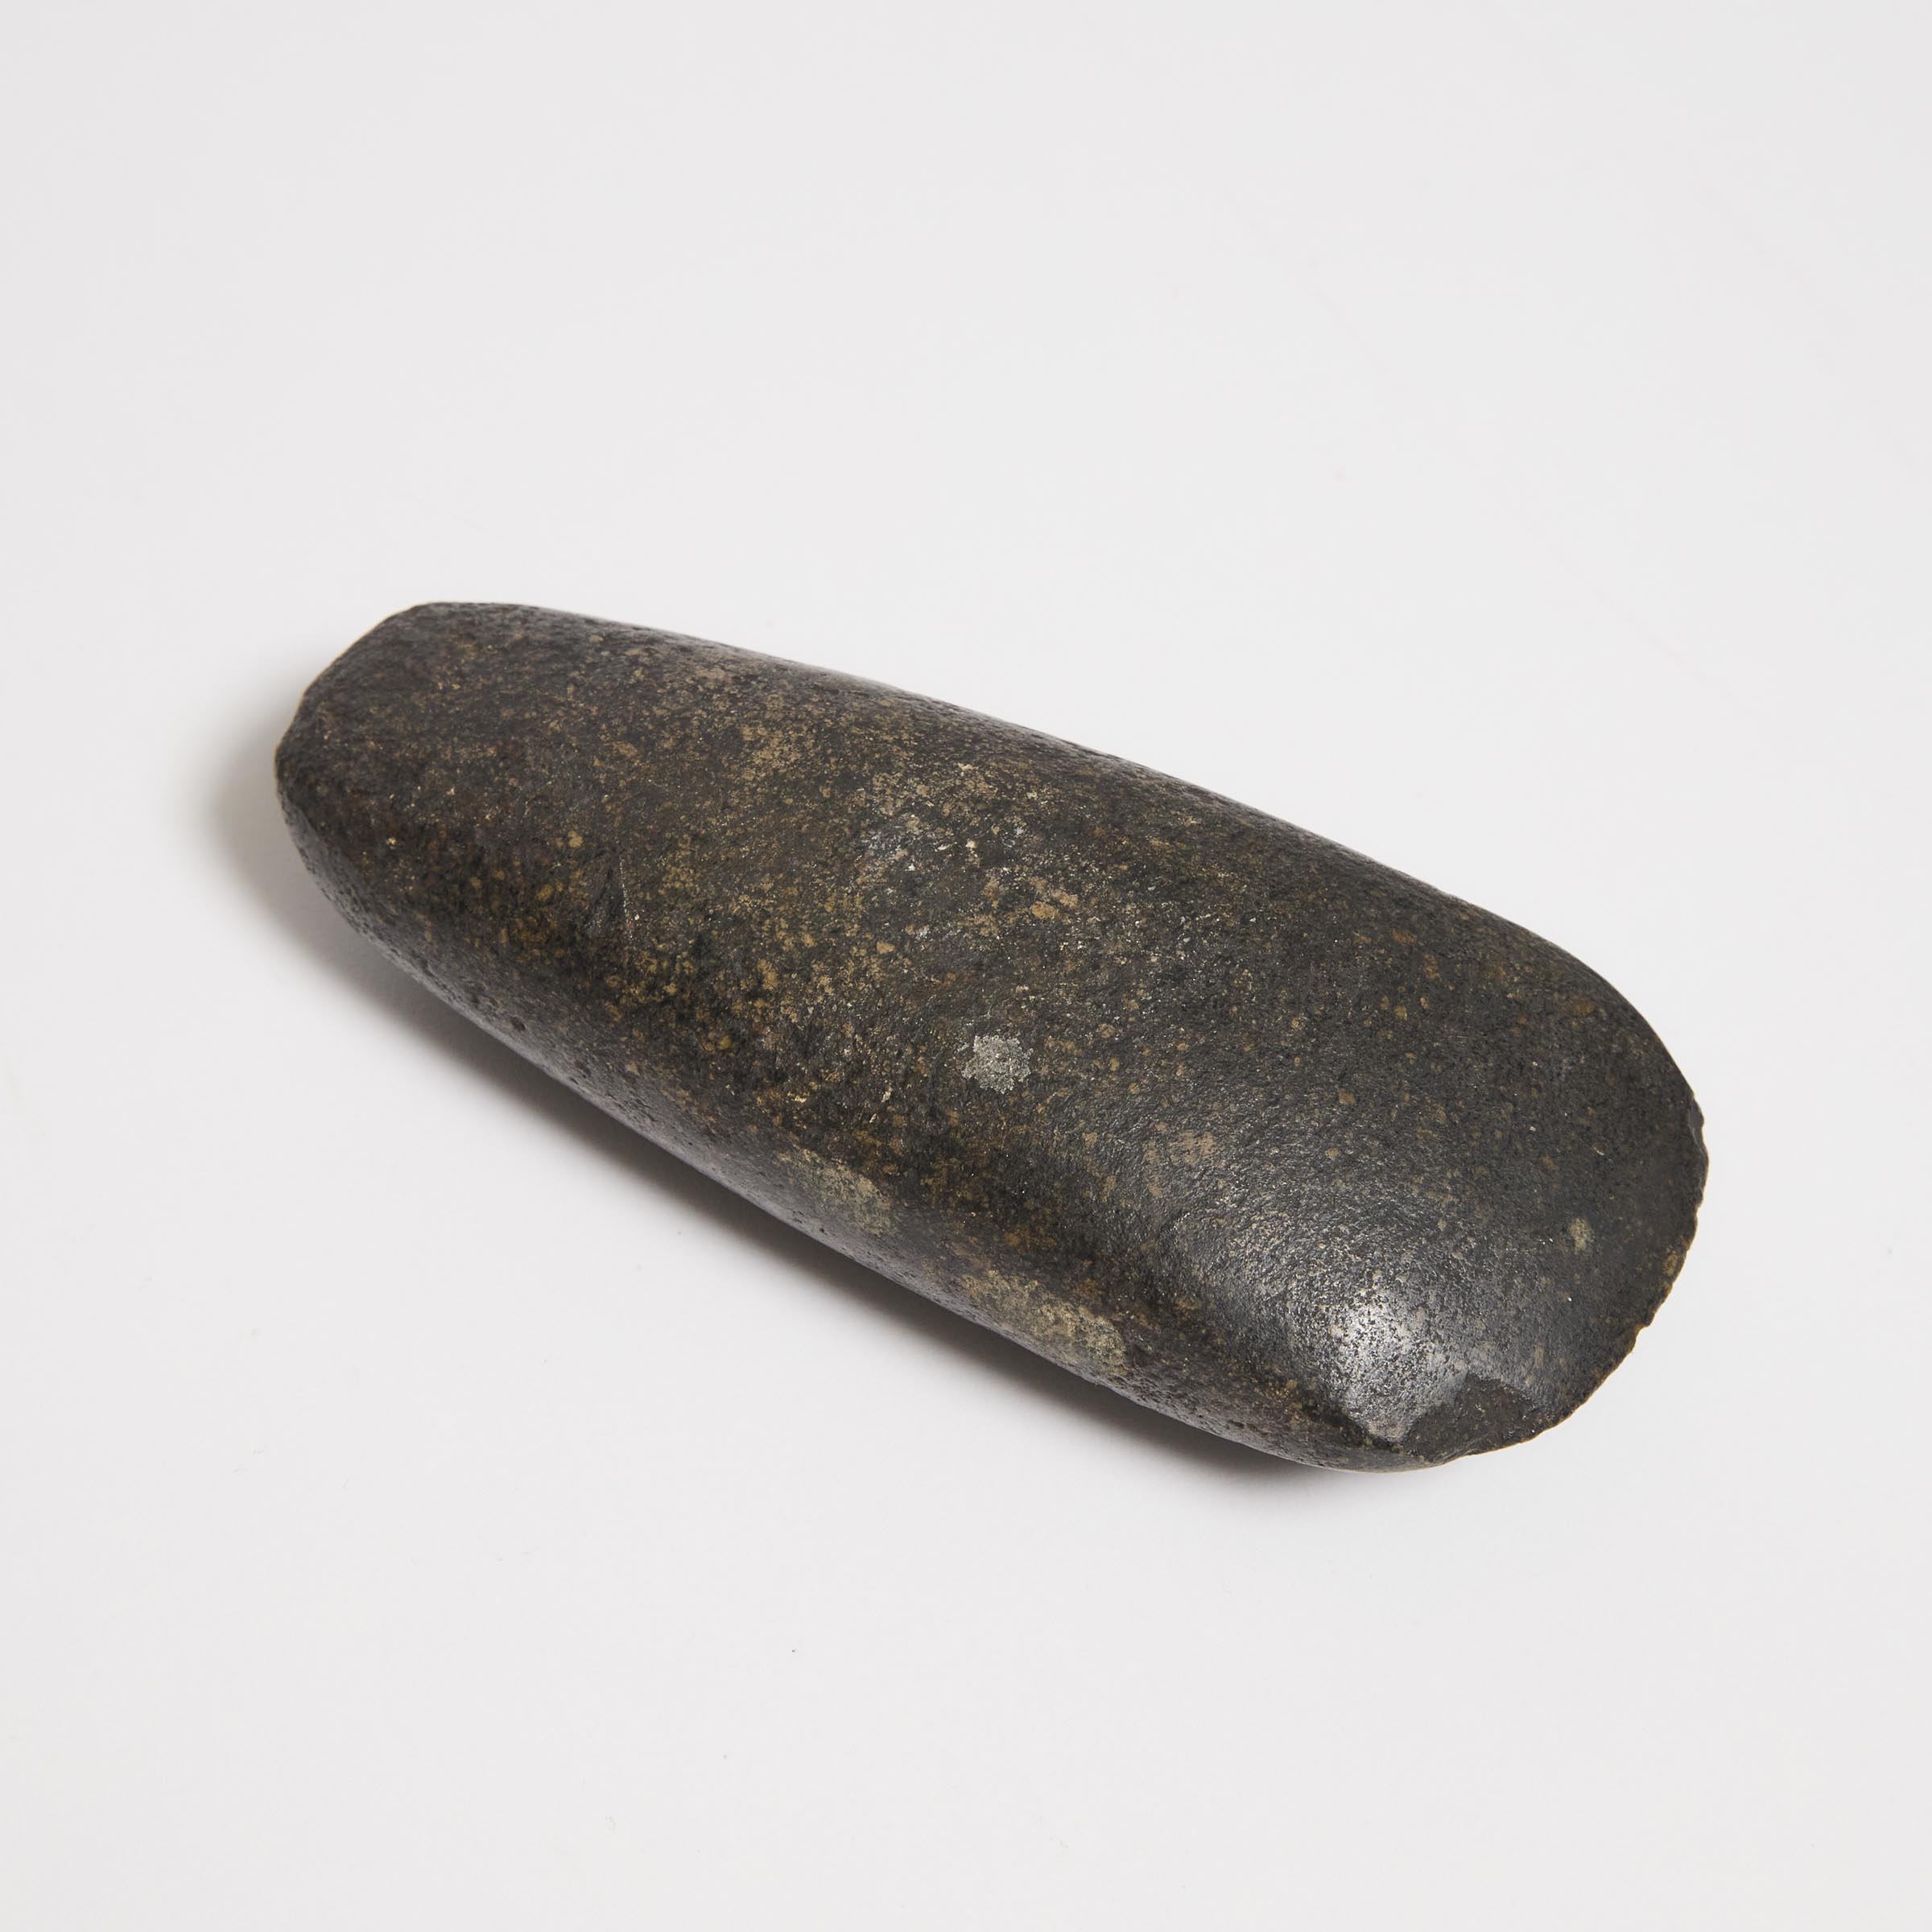 A Black Stone Hand Axe (Ben), Neolithic